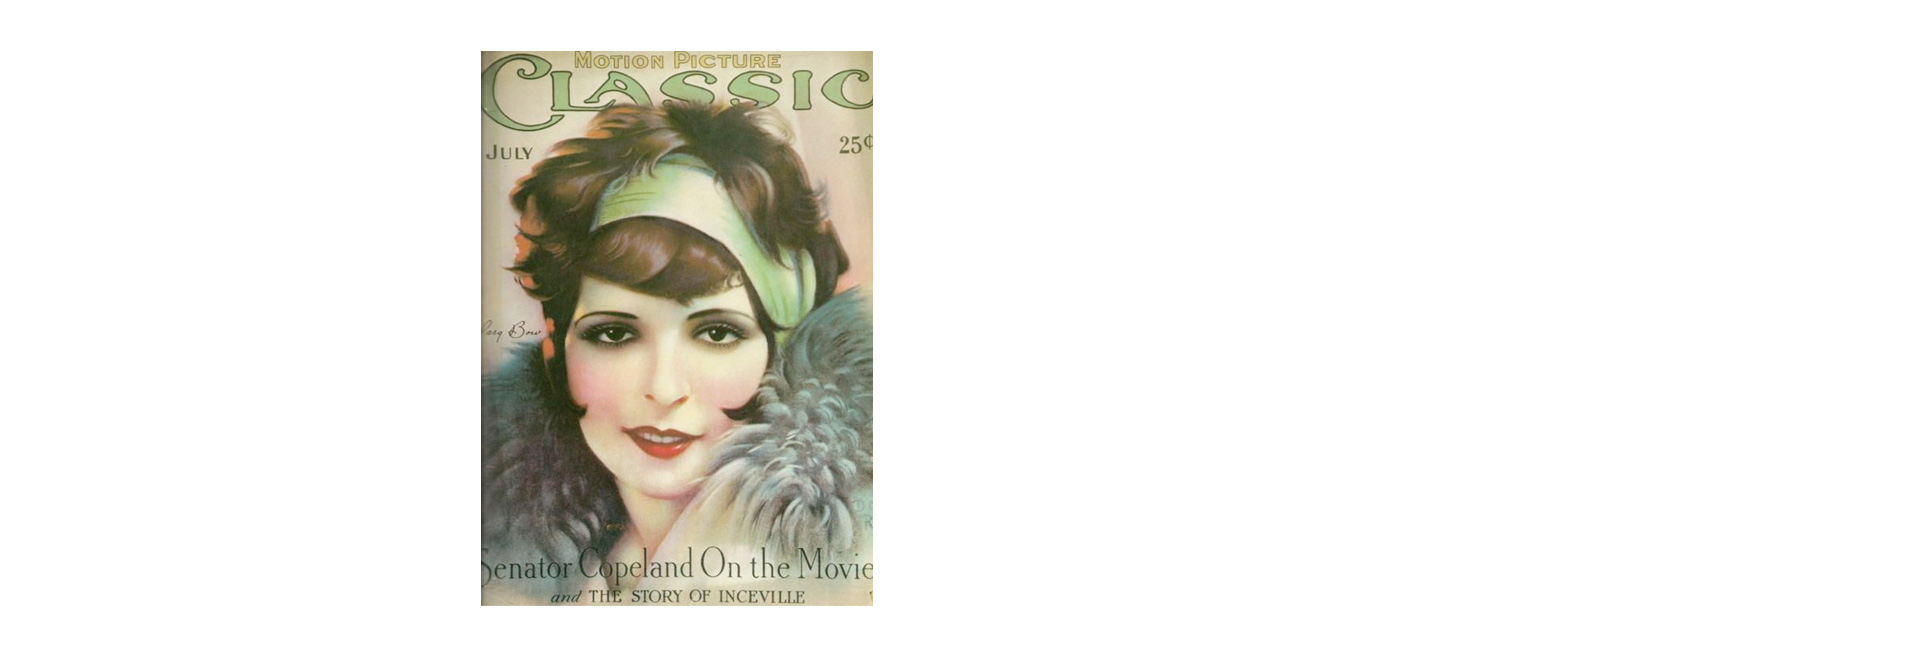 Образы с обложек журналов, воплотившие идеалы красоты в свою эпоху (фото 1)